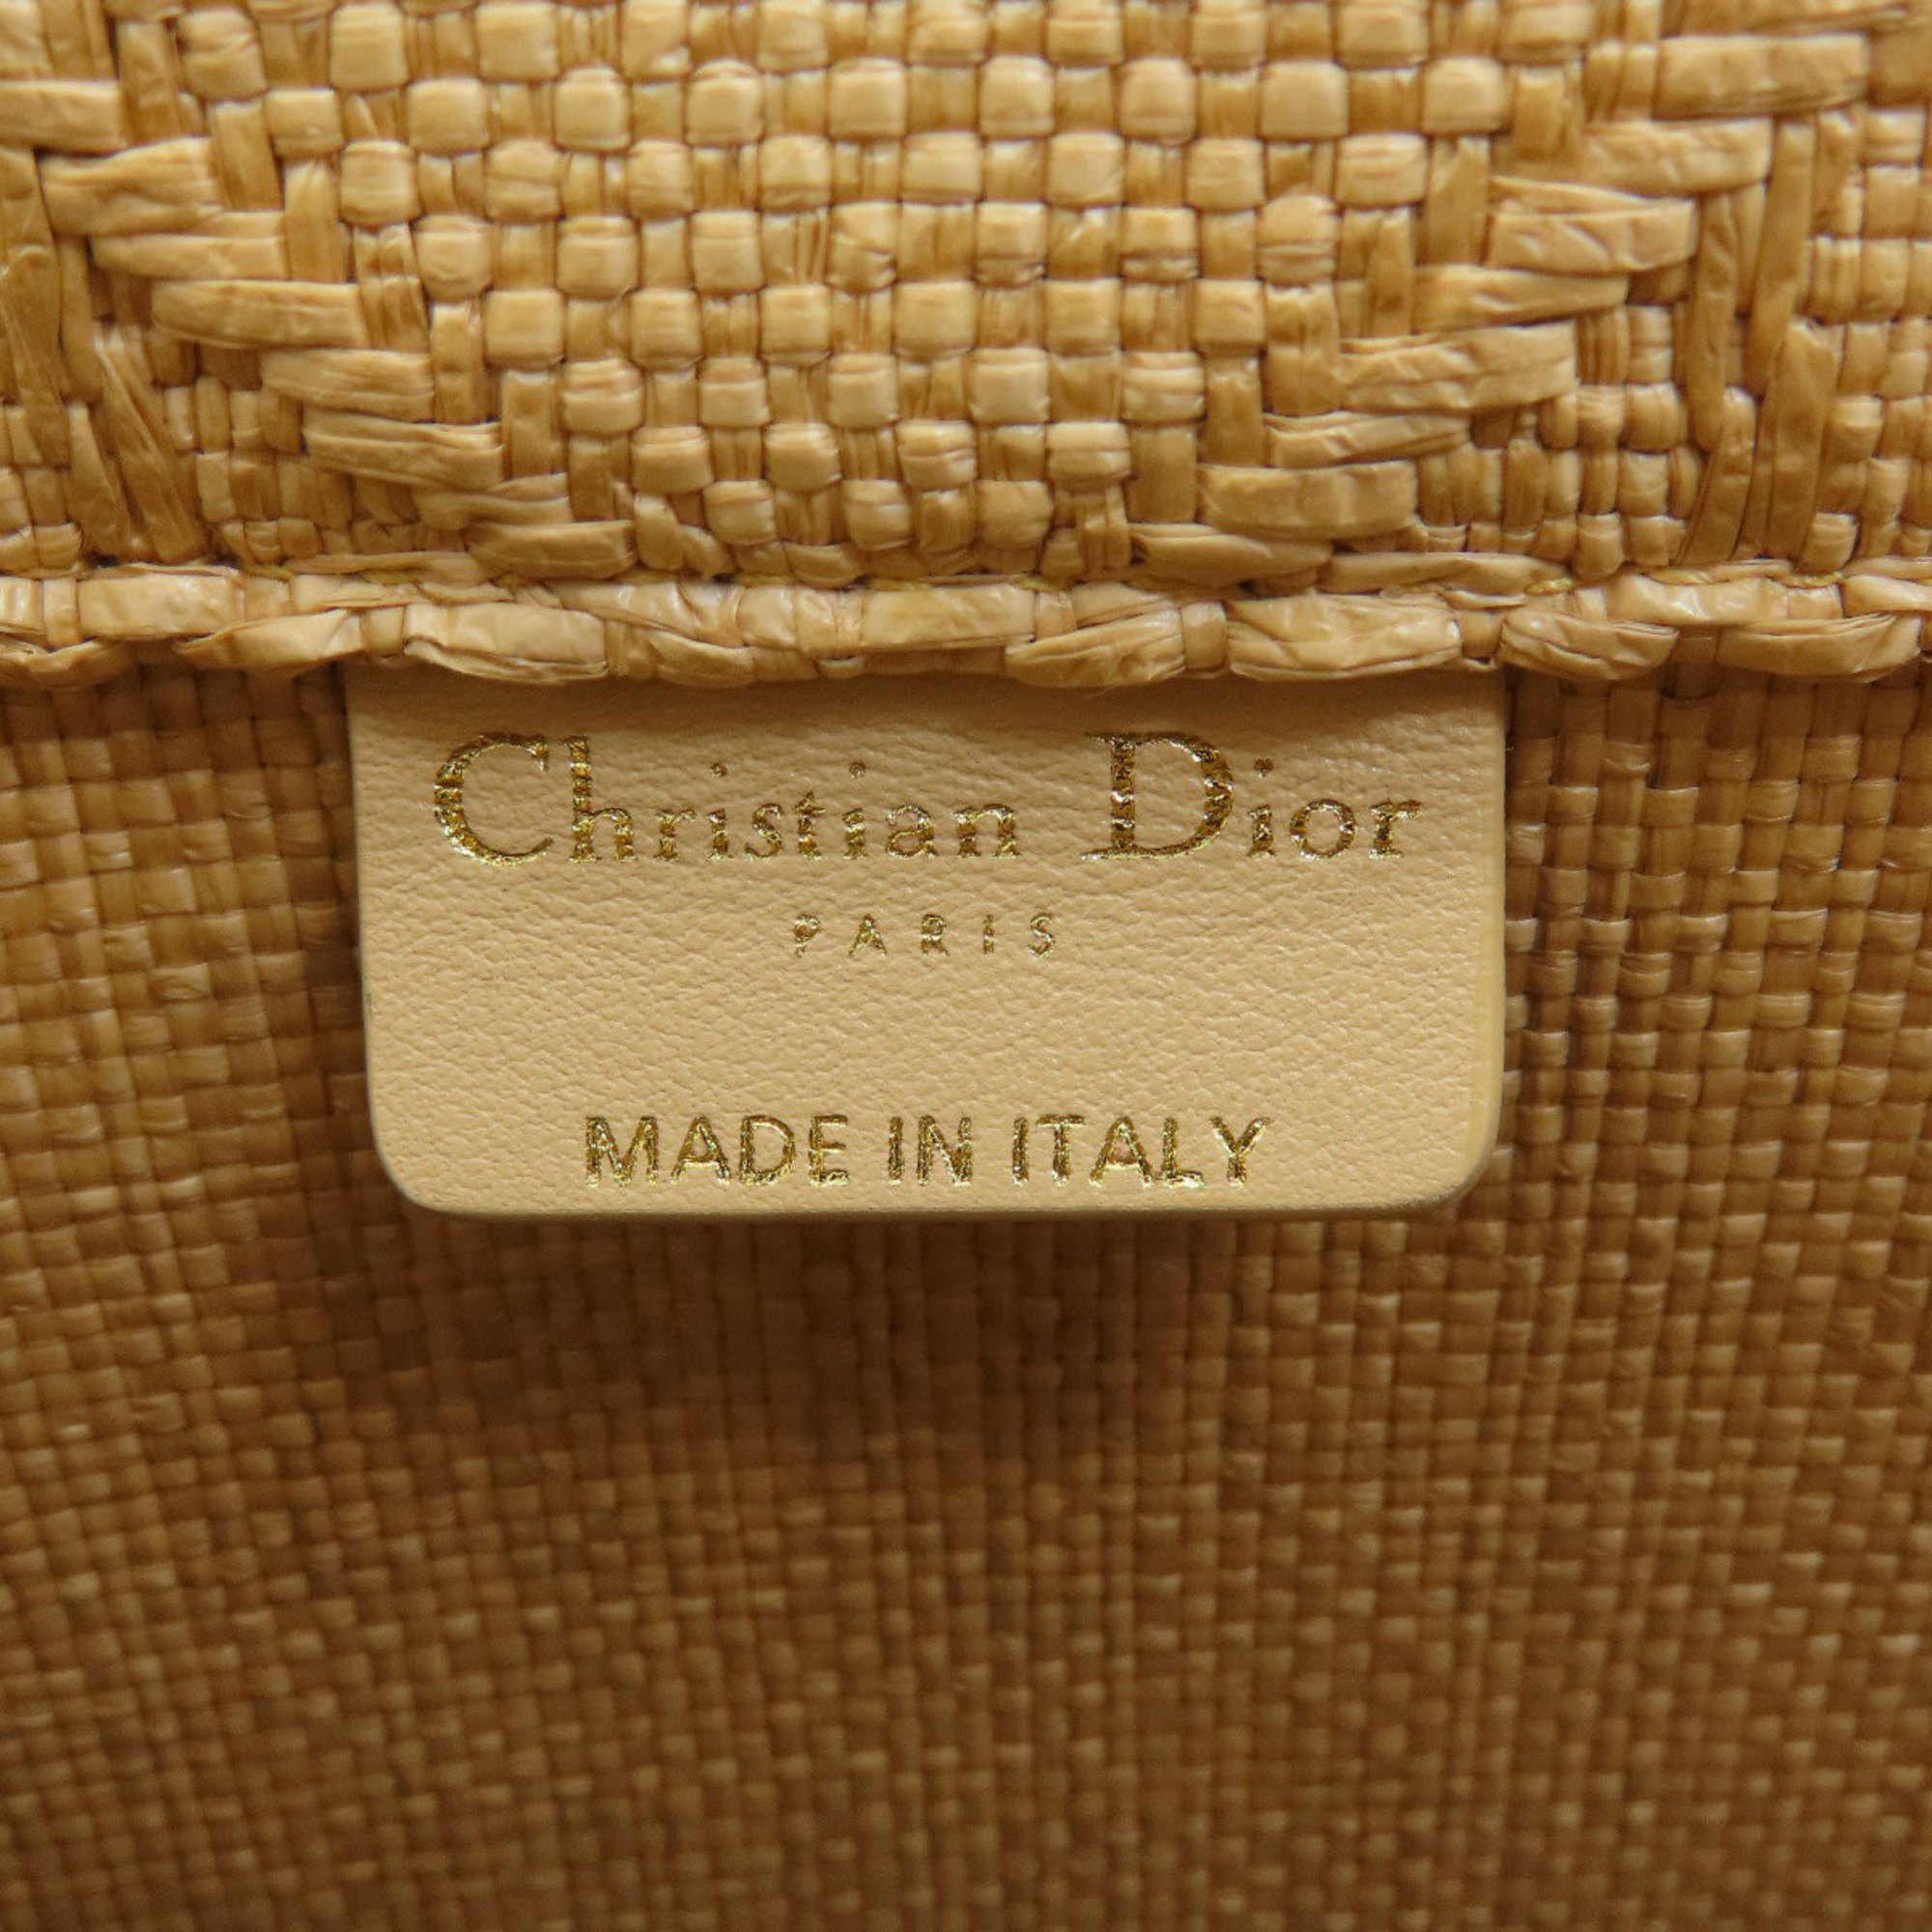 Christian Dior Book Tote Small Handbag Raffia Women's